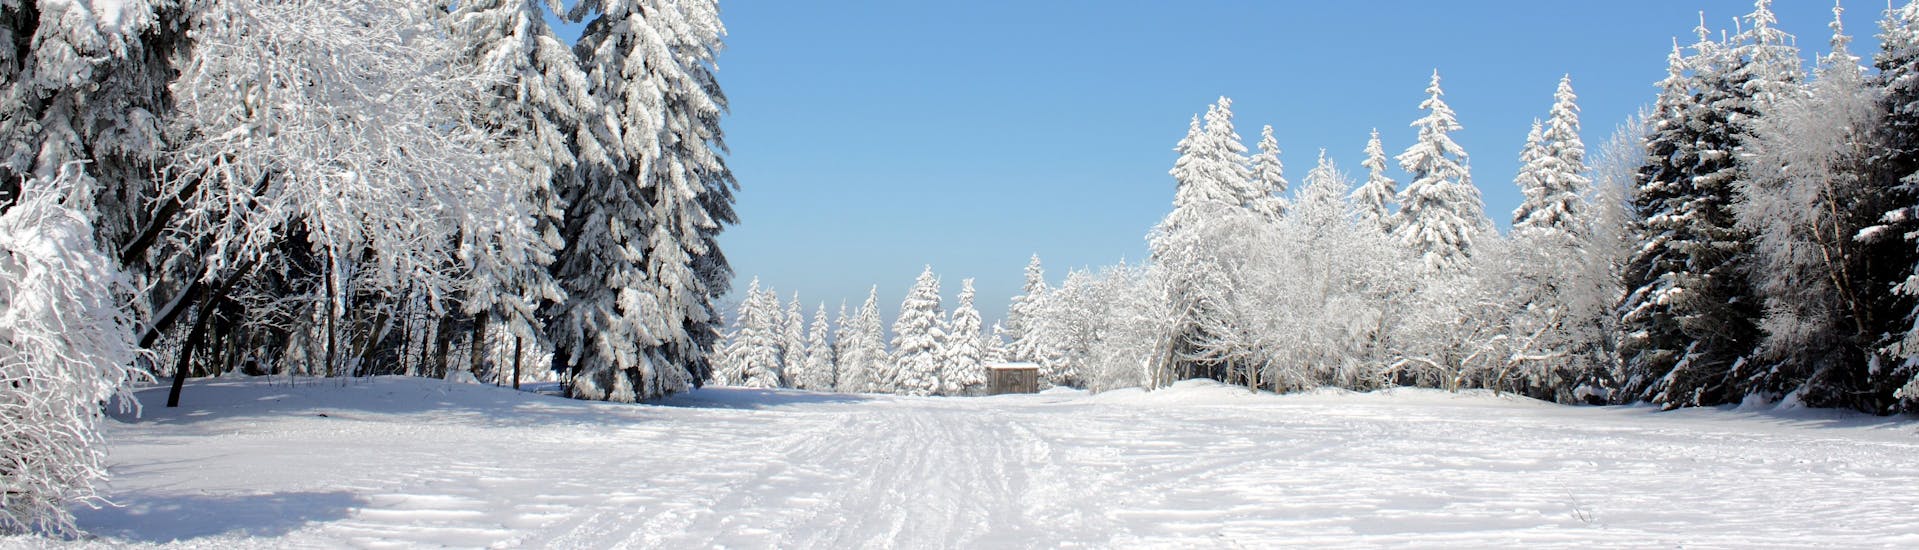 Ein Bild der verschneiten Winterlandschaft nahe Altenberg, einem beliebten deutschen Skigebiet in dem örtliche Skischulen Skikurse für Kinder und Erwachsene anbieten, unabhängig von deren Level.